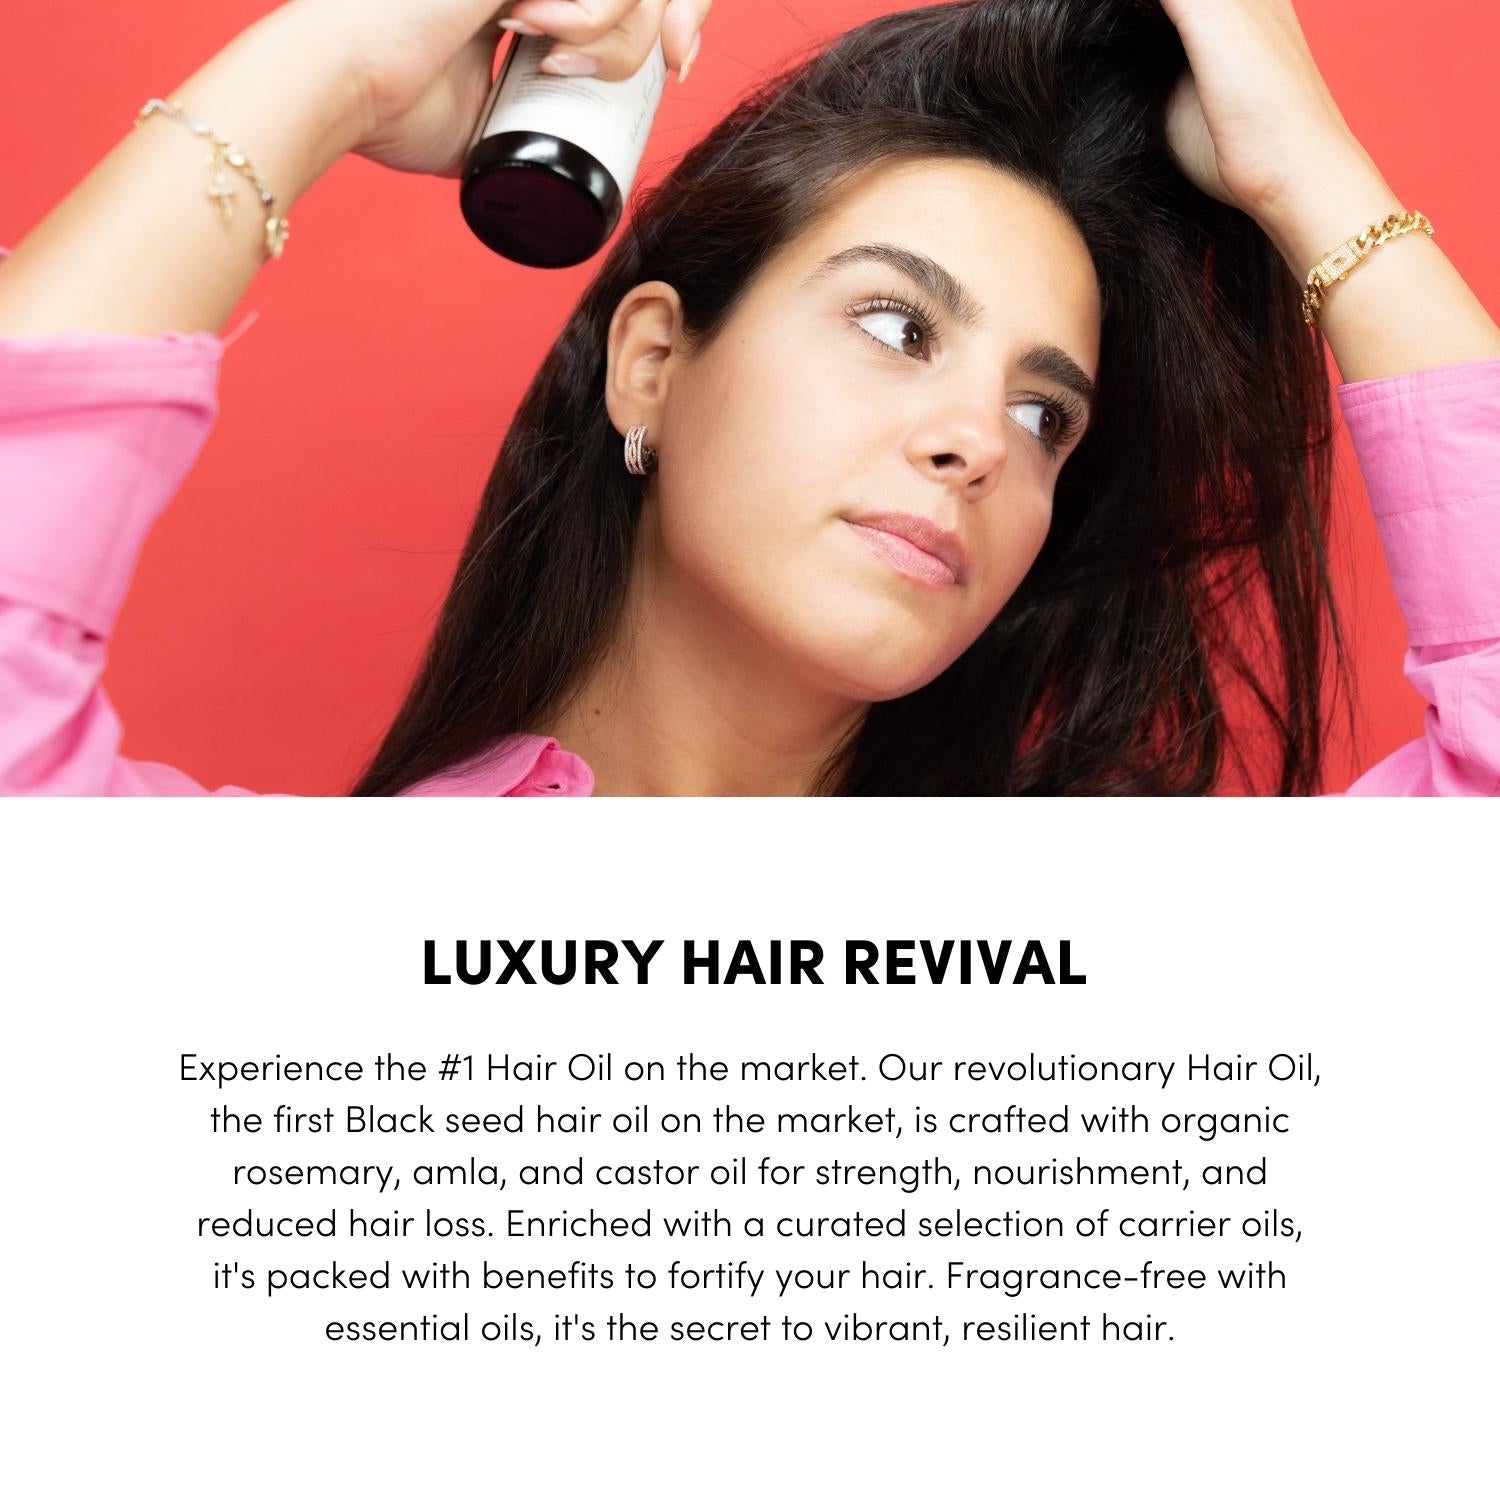 The Hair Oil - Noun Naturals Habibi Oil - Habibi Life - Noun Beard Oil -Habibi Oil - Hair Growth Oil